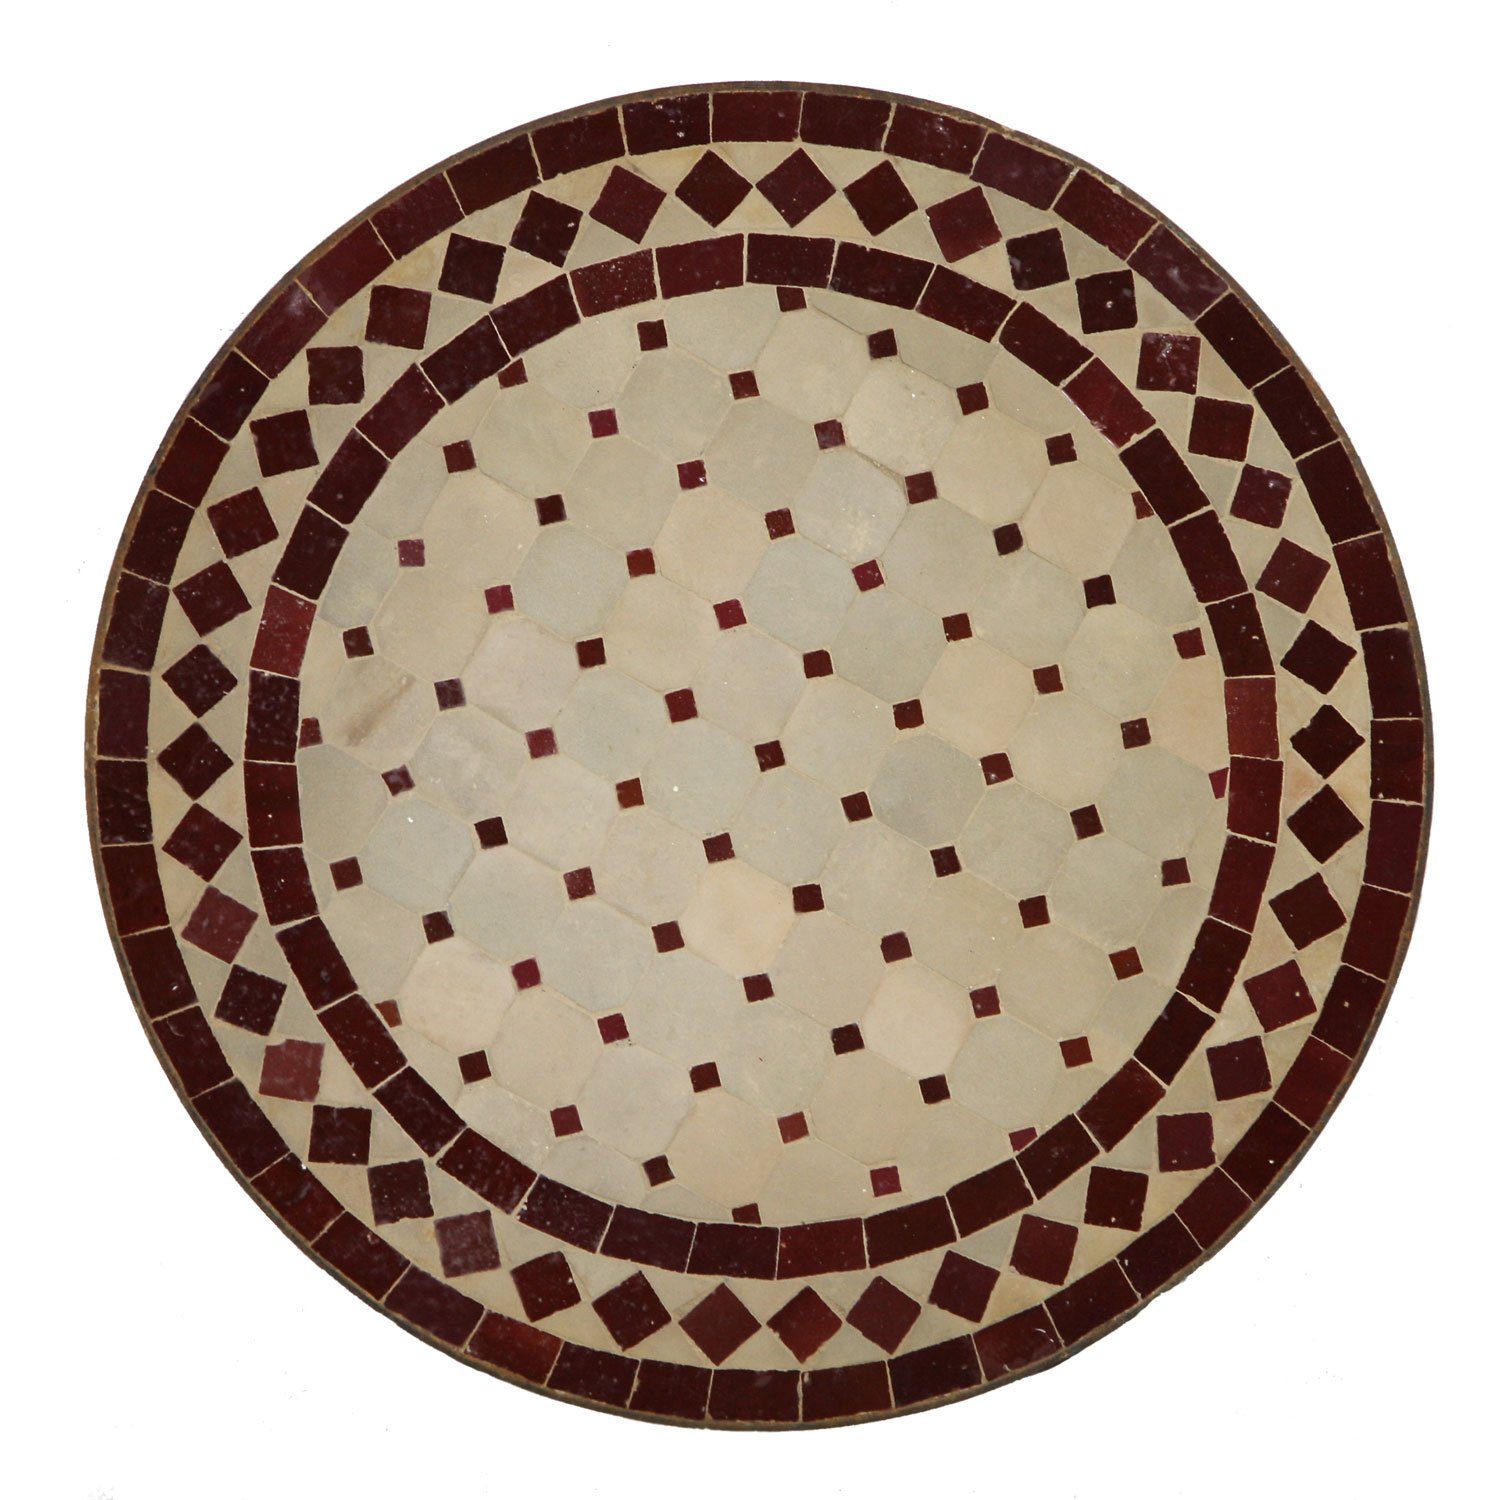 Casa Moro Beistelltisch Marokkanischer Mosaik-Beistelltisch Ø 45 cm rund Bordeaux Terrakotta (Bistrotisch kleiner Gartentisch Balkontisch), Mosaiktisch mit Gestell Höhe 50 cm Marokko, MT2993